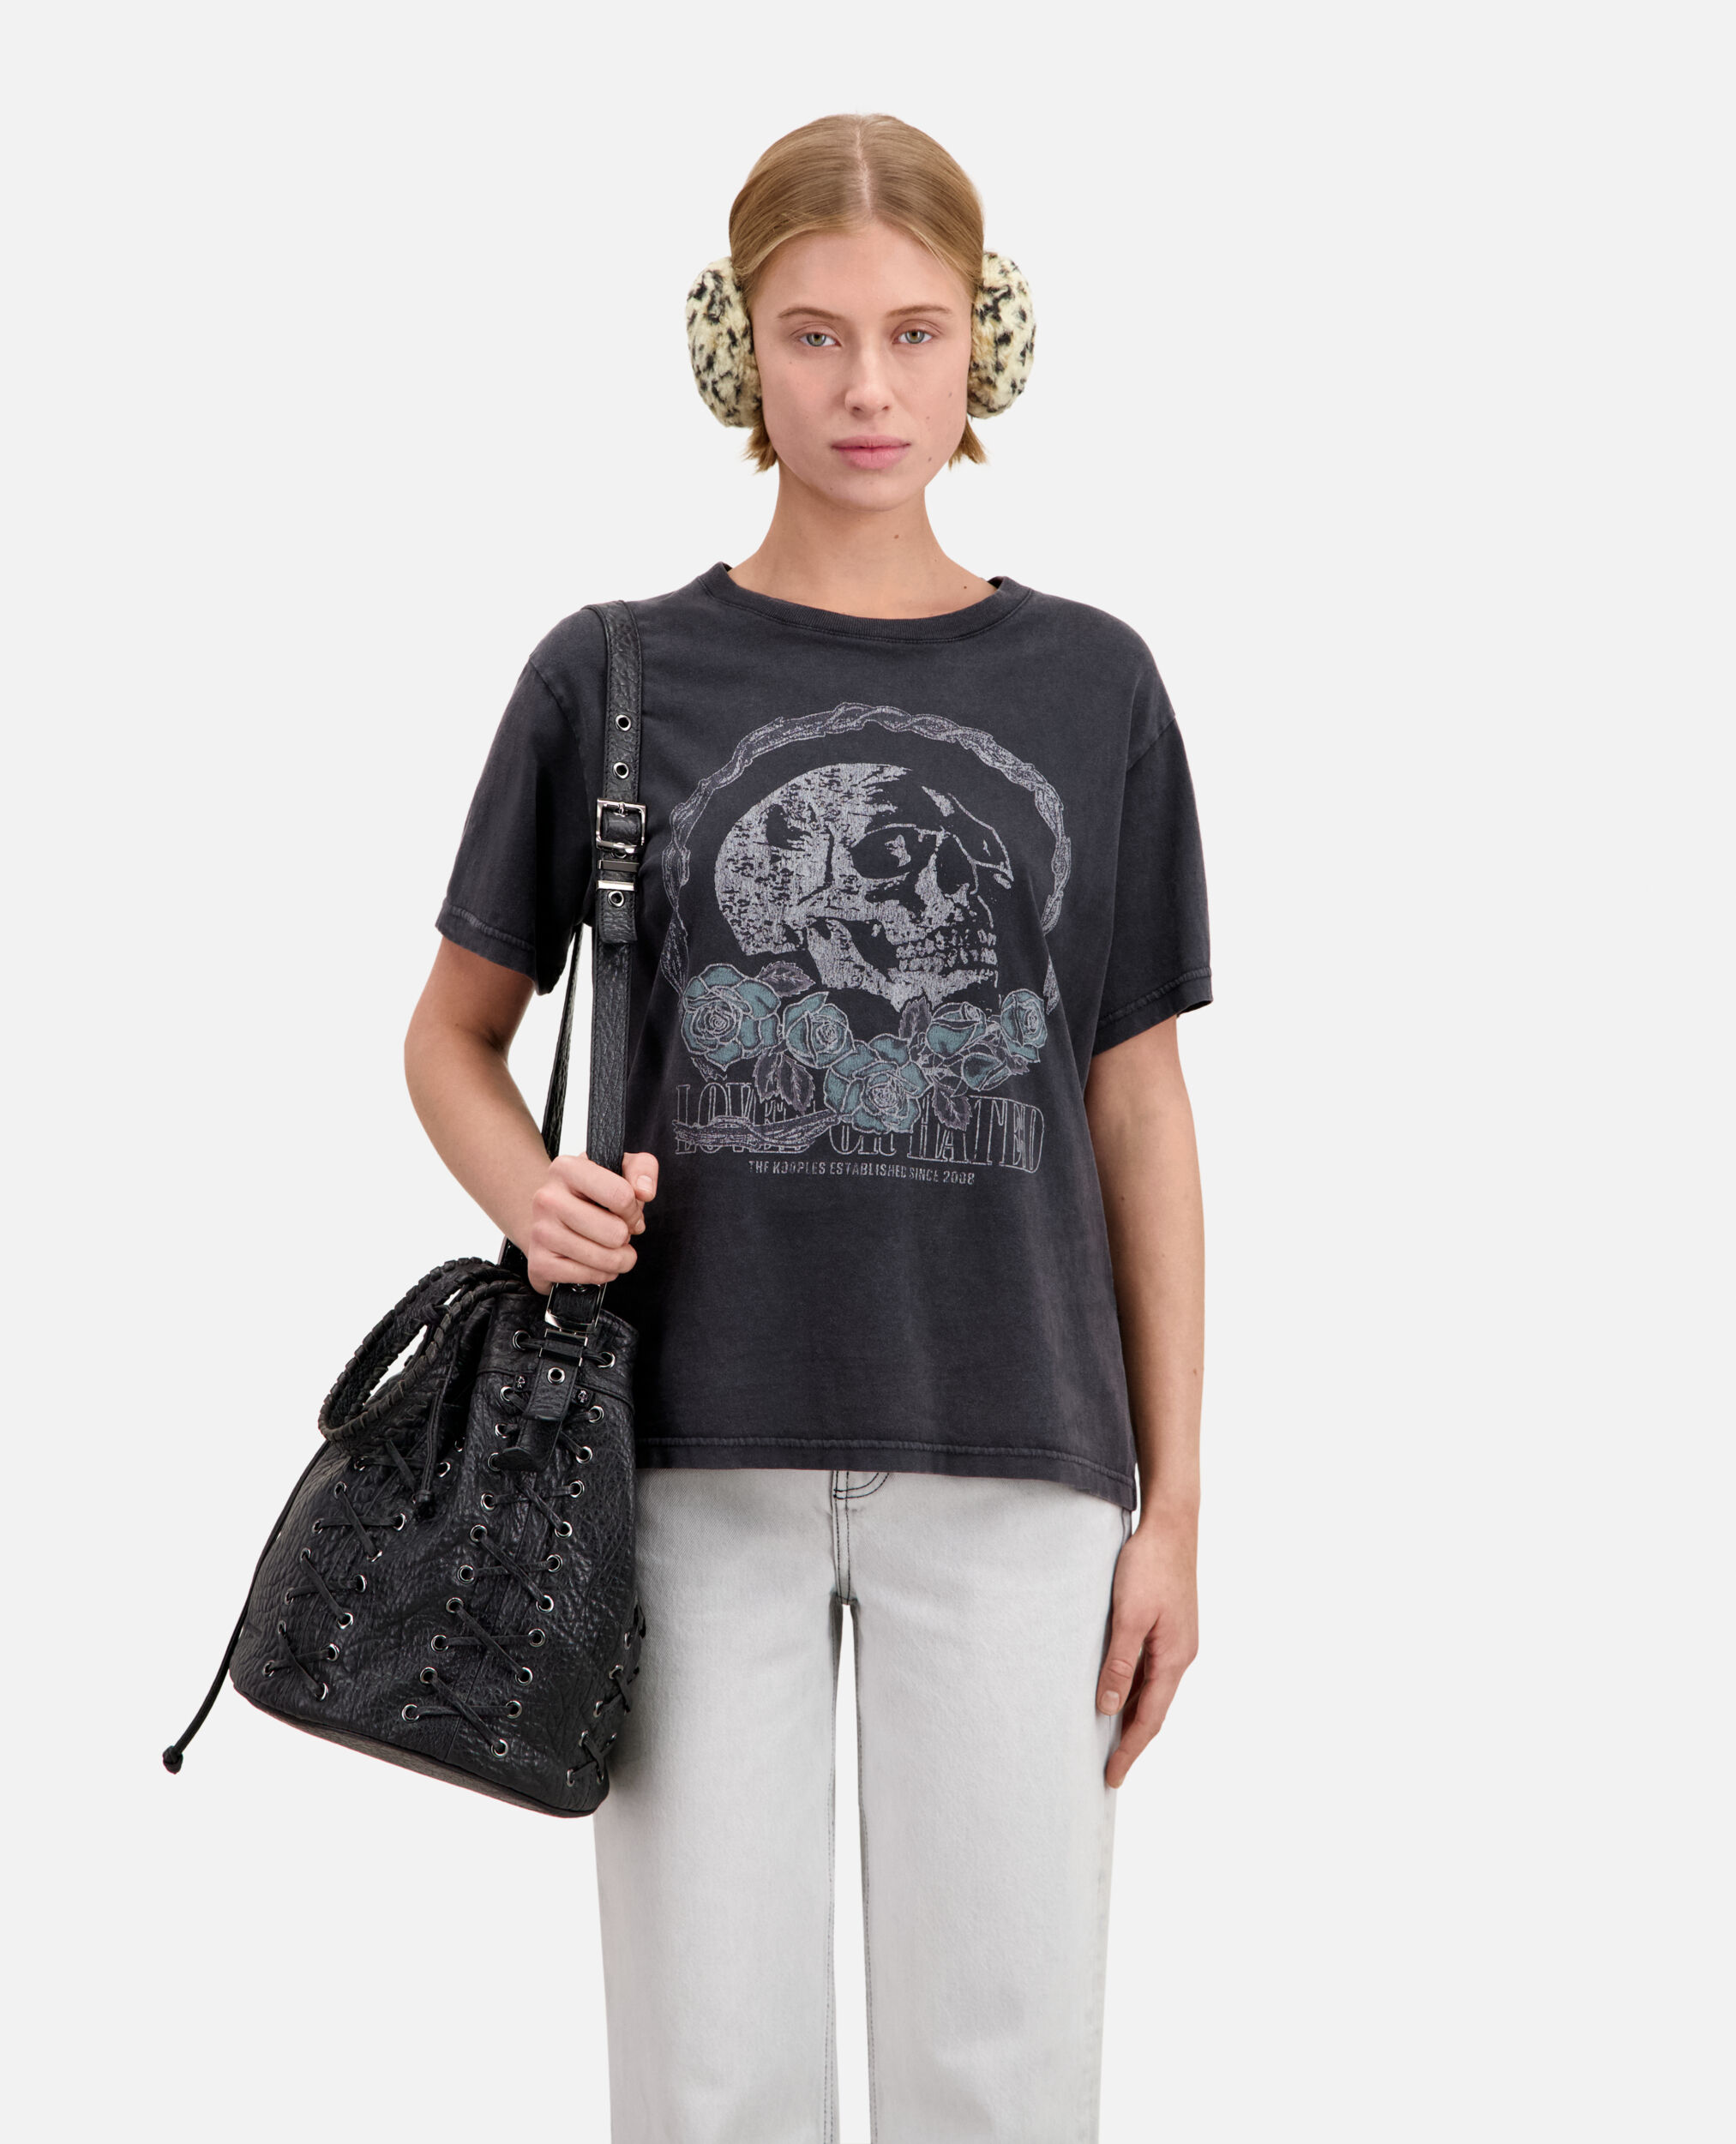 Women's black t-shirt with vintage skull serigraphy, BLACK WASHED, hi-res image number null